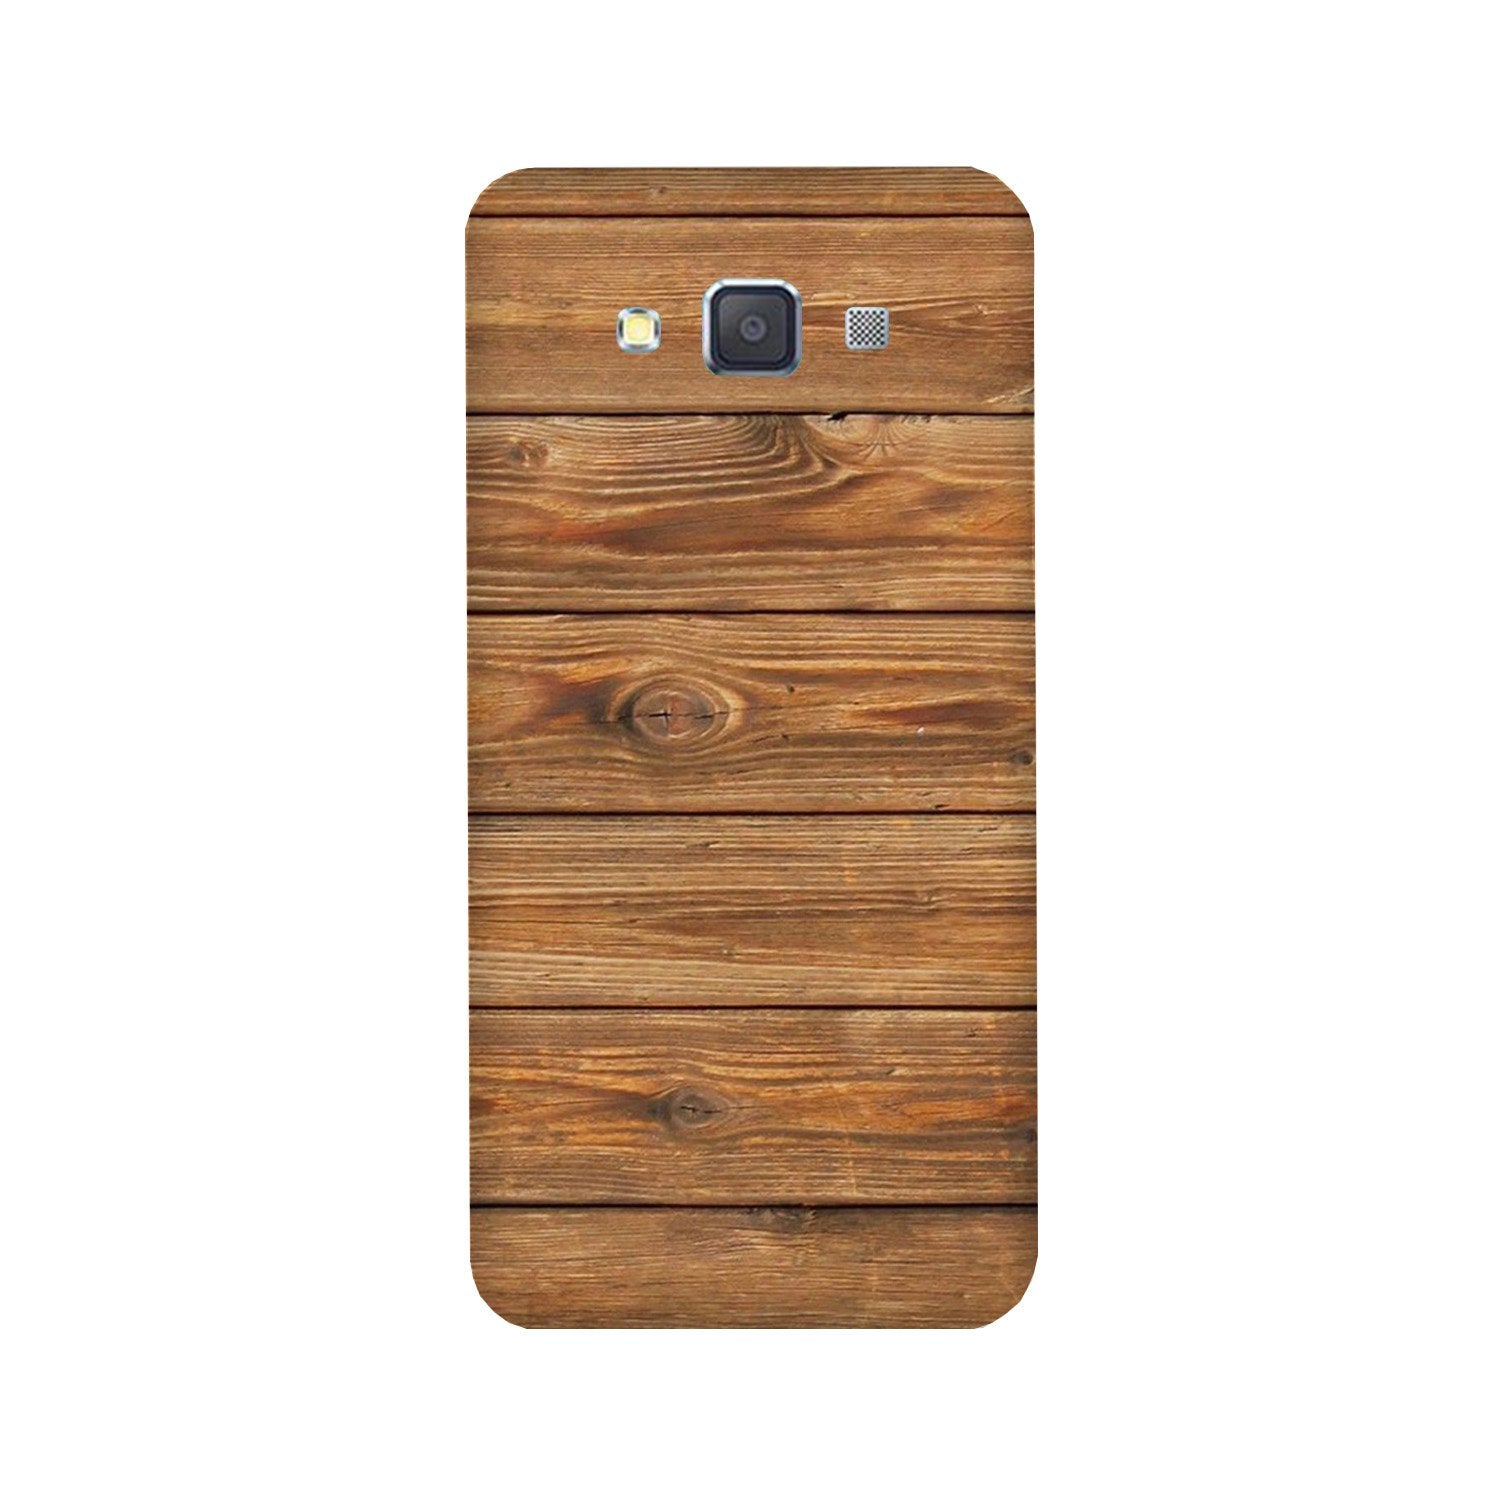 Wooden Look Case for Galaxy E5(Design - 113)